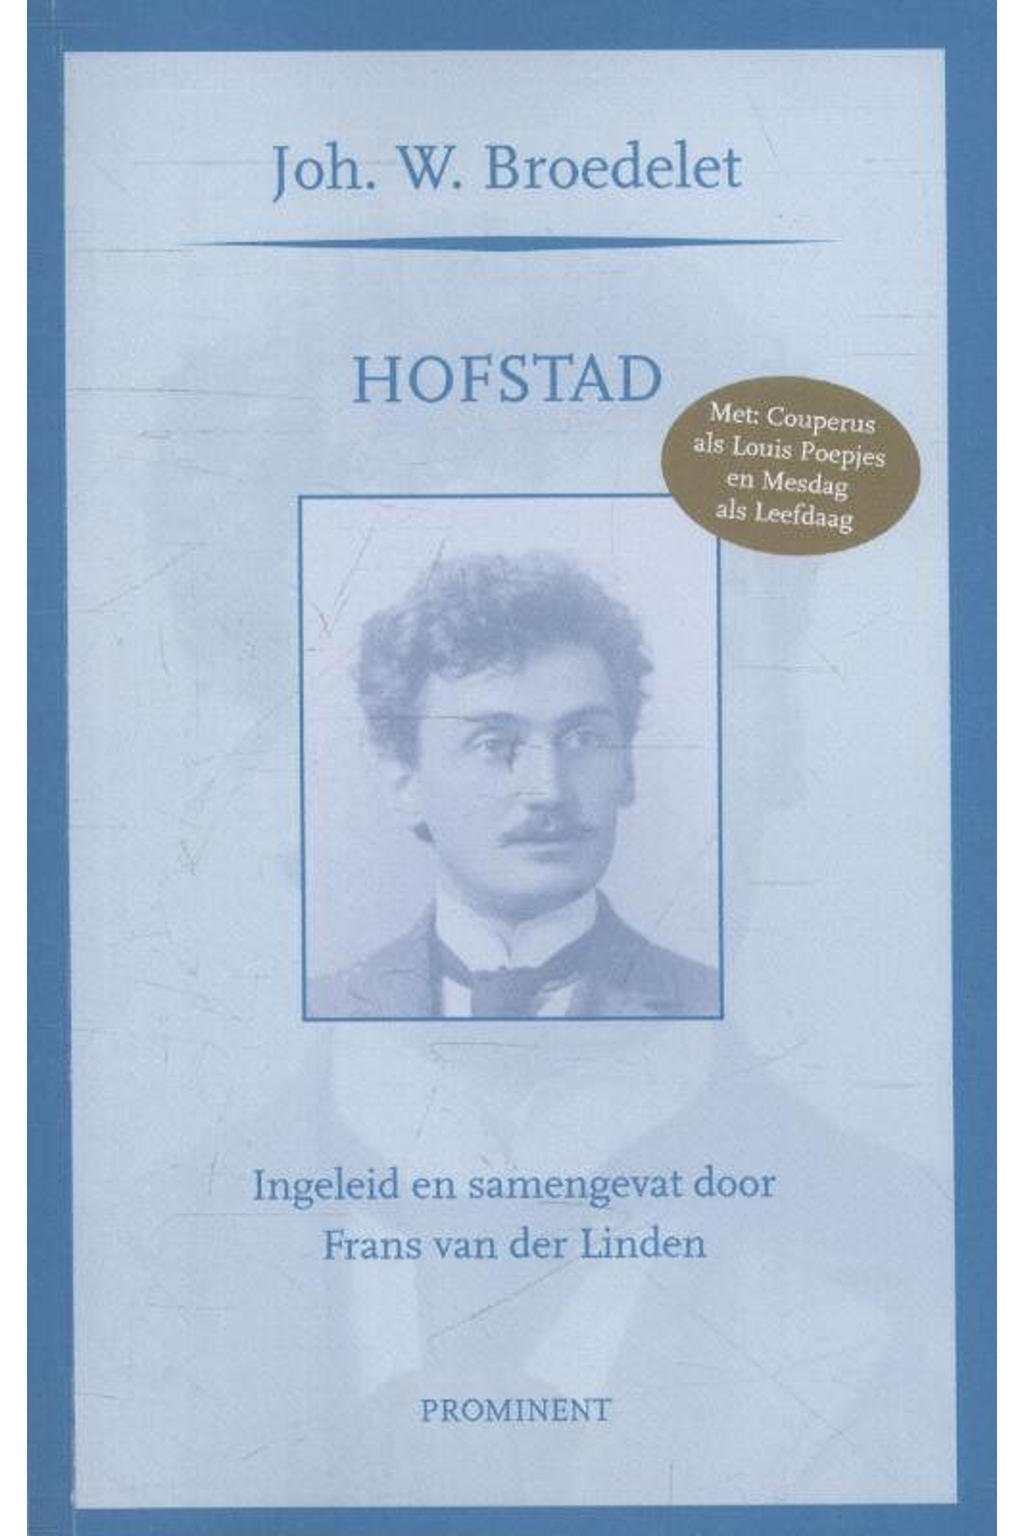 Prominent-reeks: Hofstad - Joh. W. Broedelet